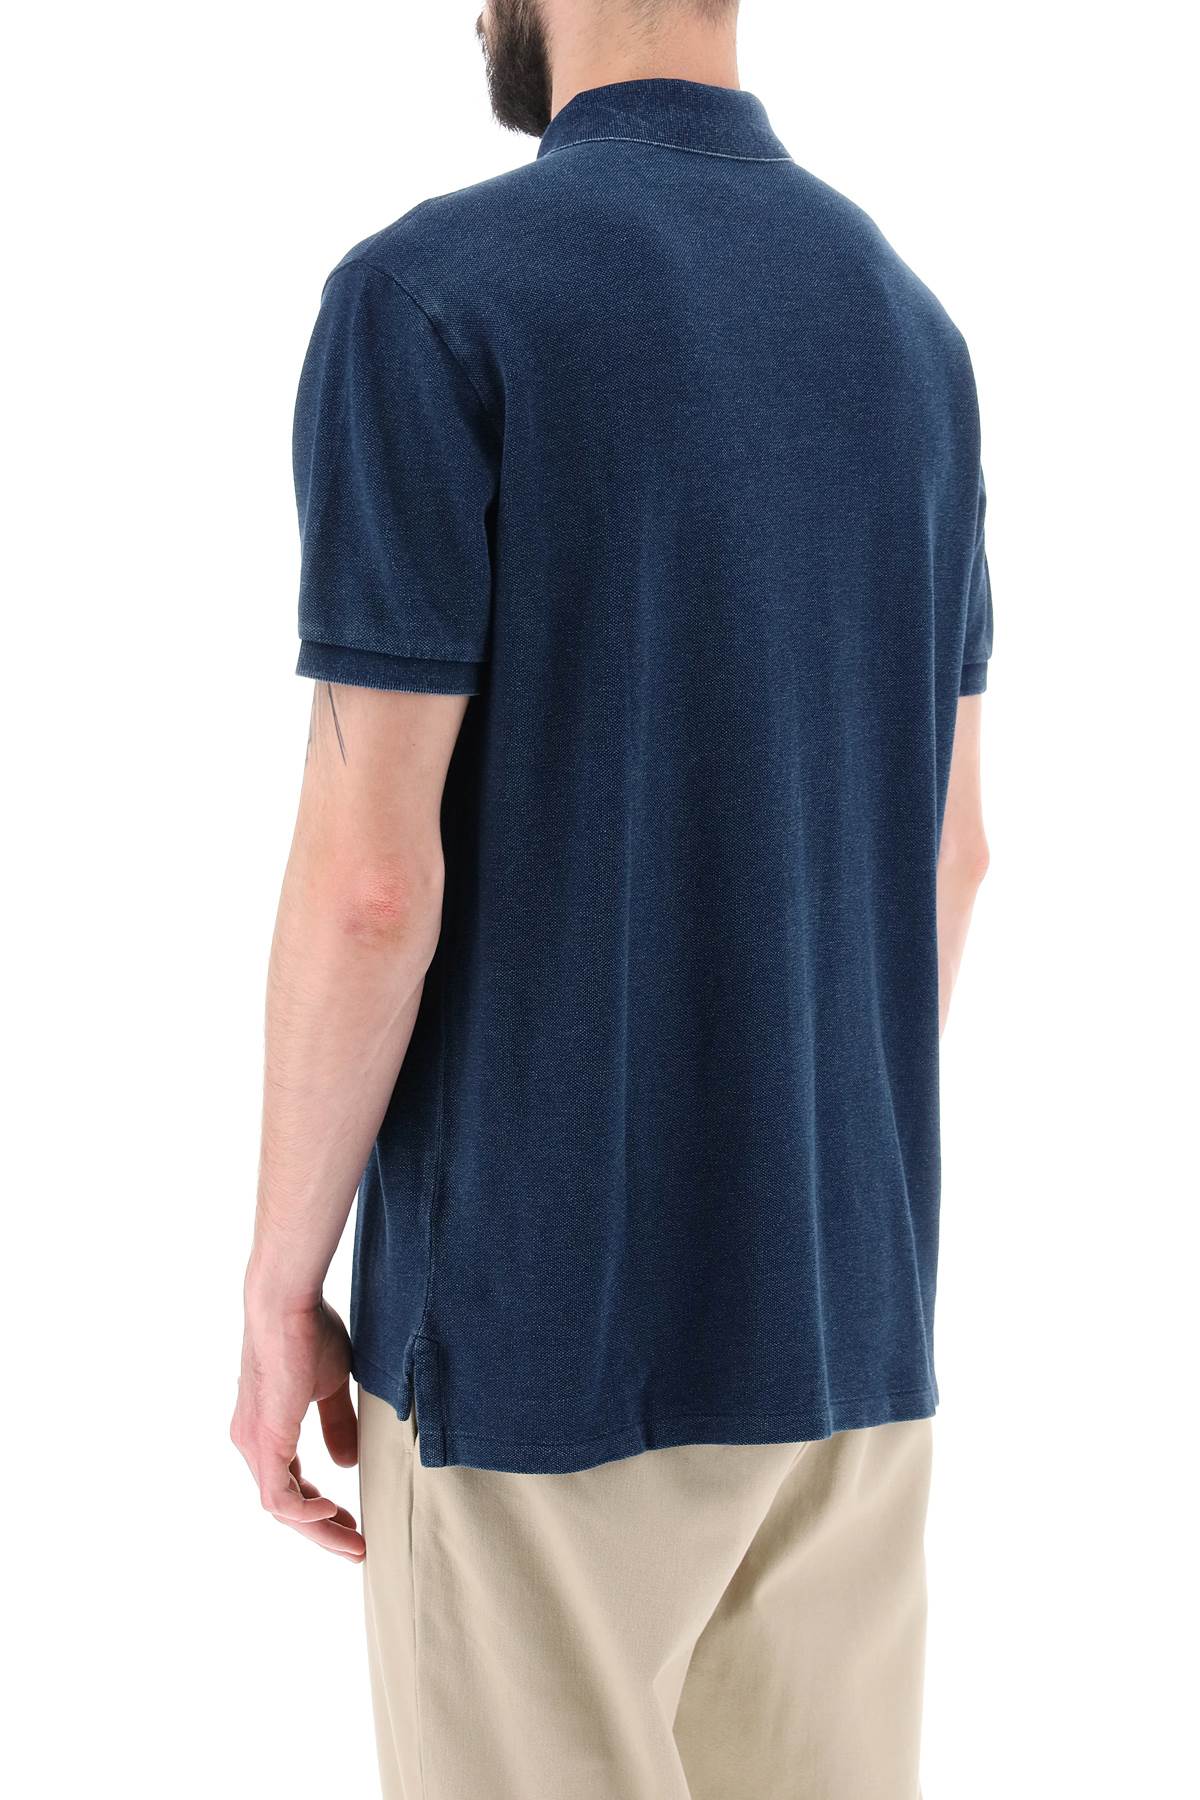 Shop Polo Ralph Lauren Pique Cotton Polo Shirt In Dark Indigo (blue)